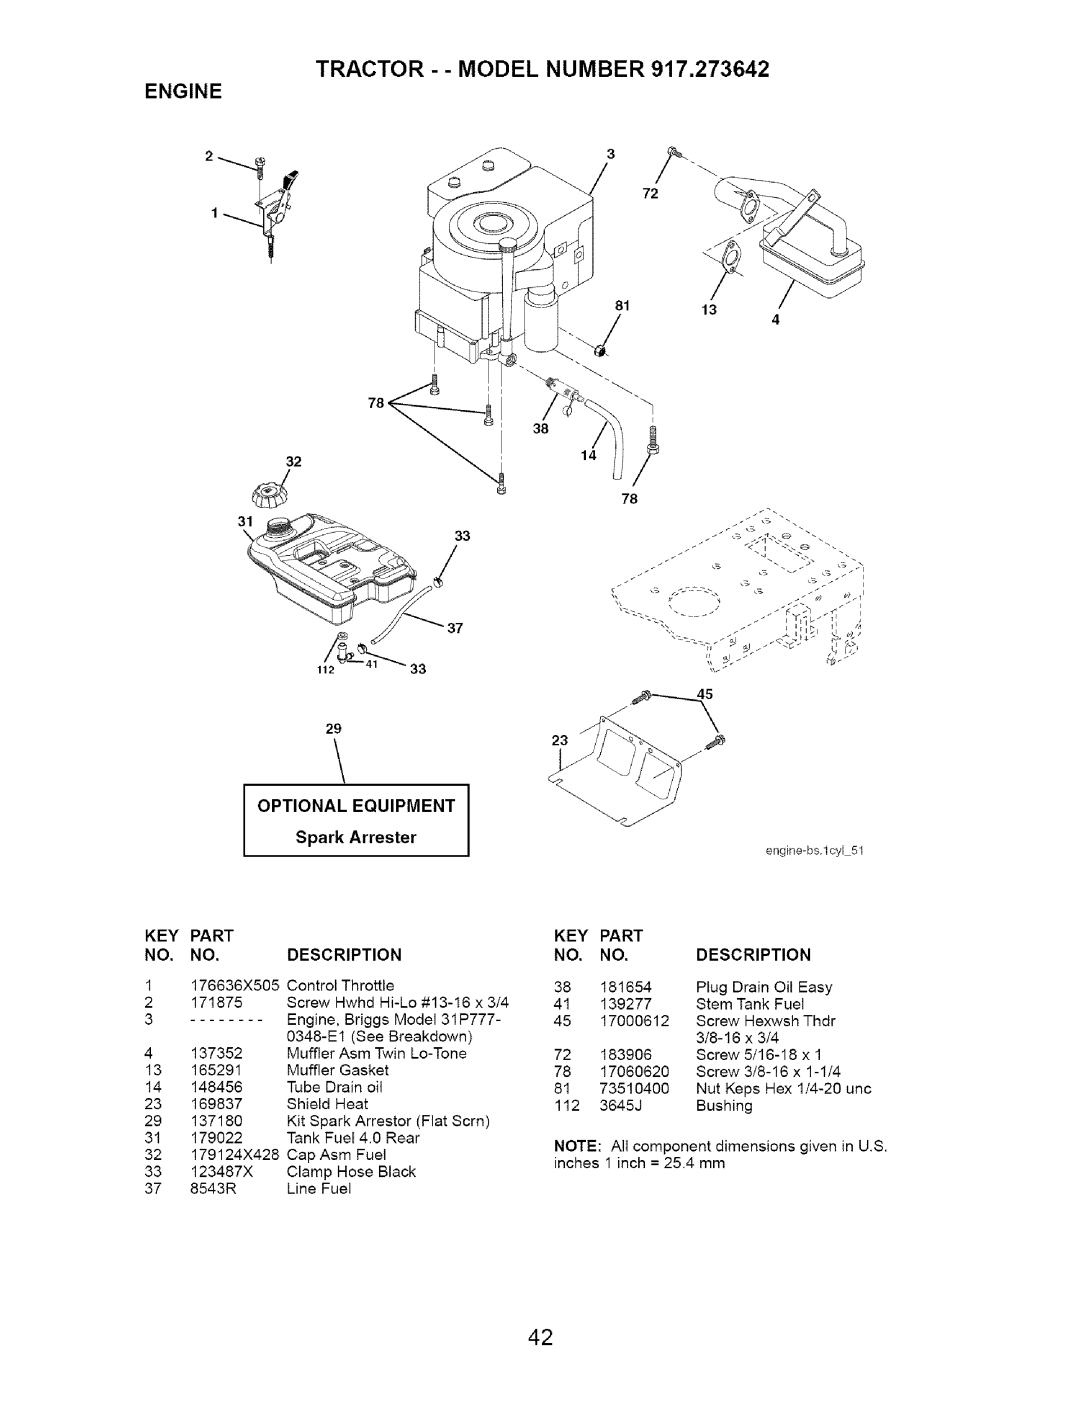 Craftsman 917.273642 manual TRACTOR - - MODEL NUMBER 917,273642, Engine, OPTIONALSpark ArresterEQUIPMENT 